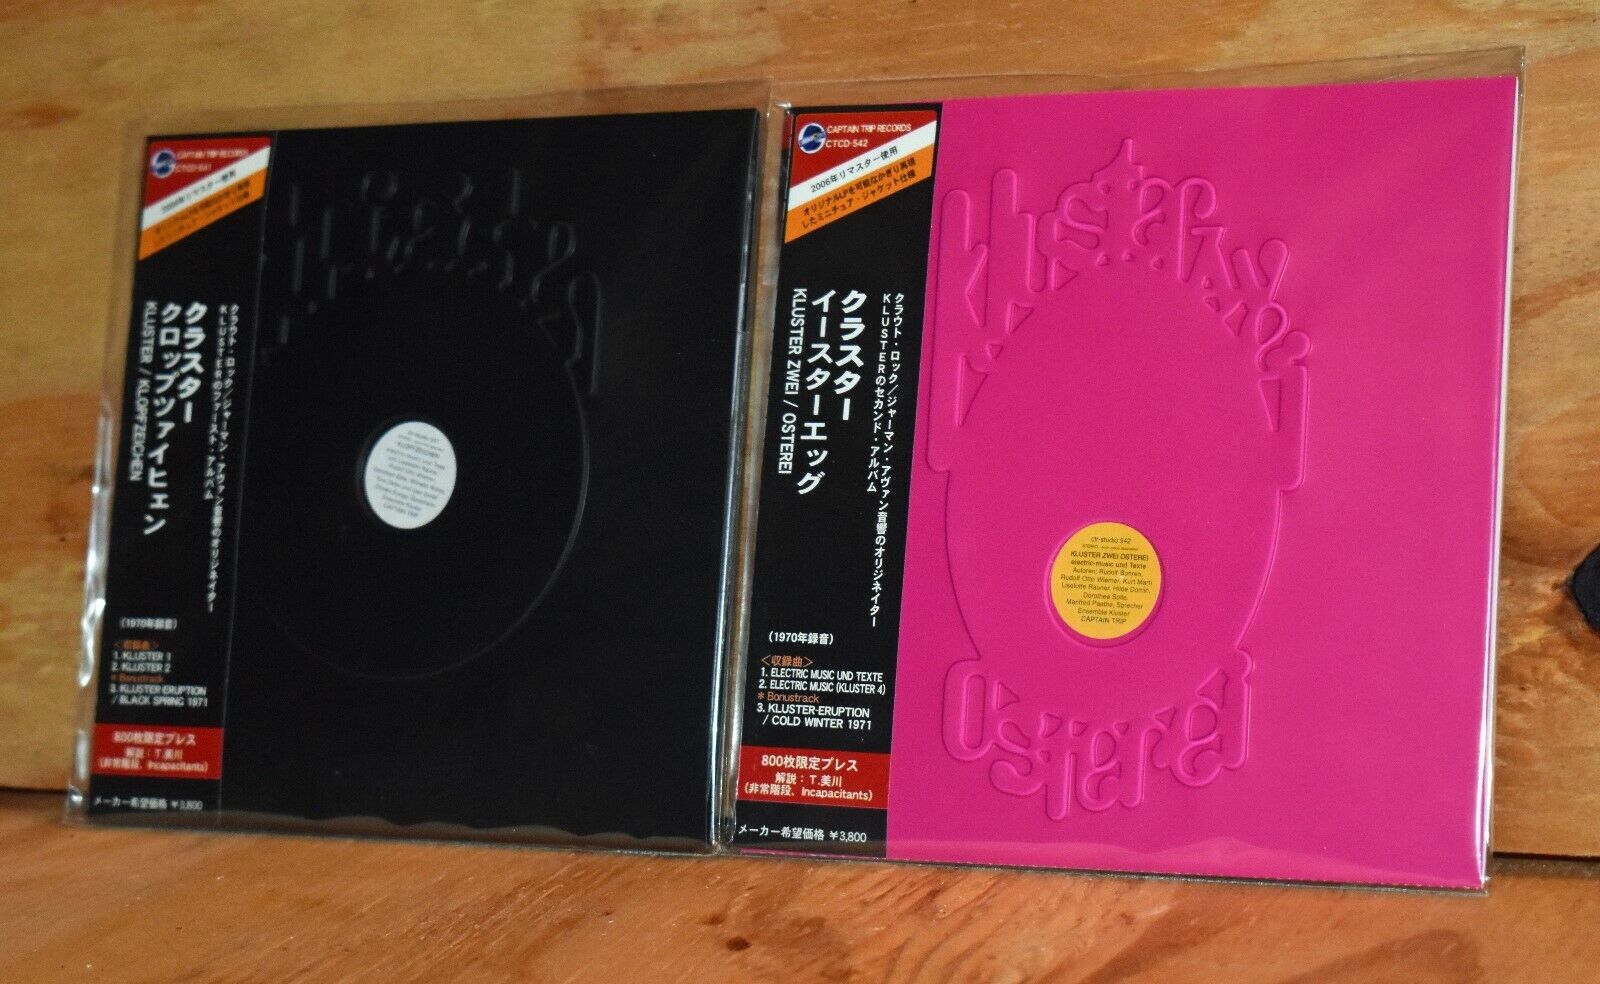 KLUSTER, CONRAD SCHNITZLER: "Klopfzeichen/Osterei" 8-Jap Mini-LP CDs+DVD-R,Xtras Без бренда - фотография #4